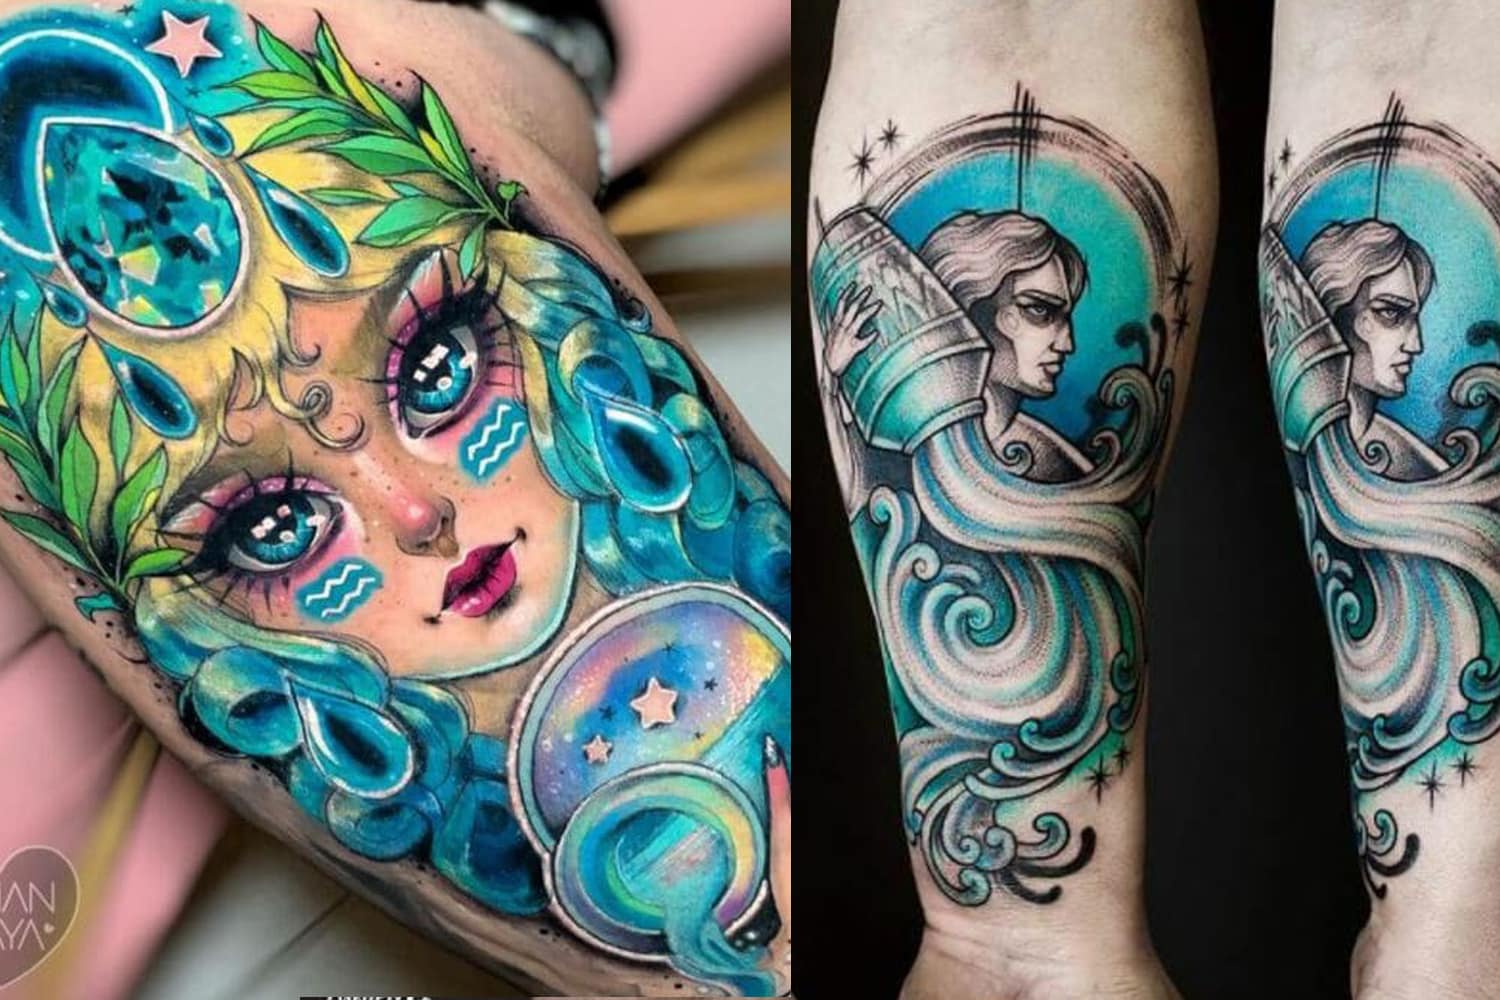 Aquarius zodiac tattoo idea | TattoosAI